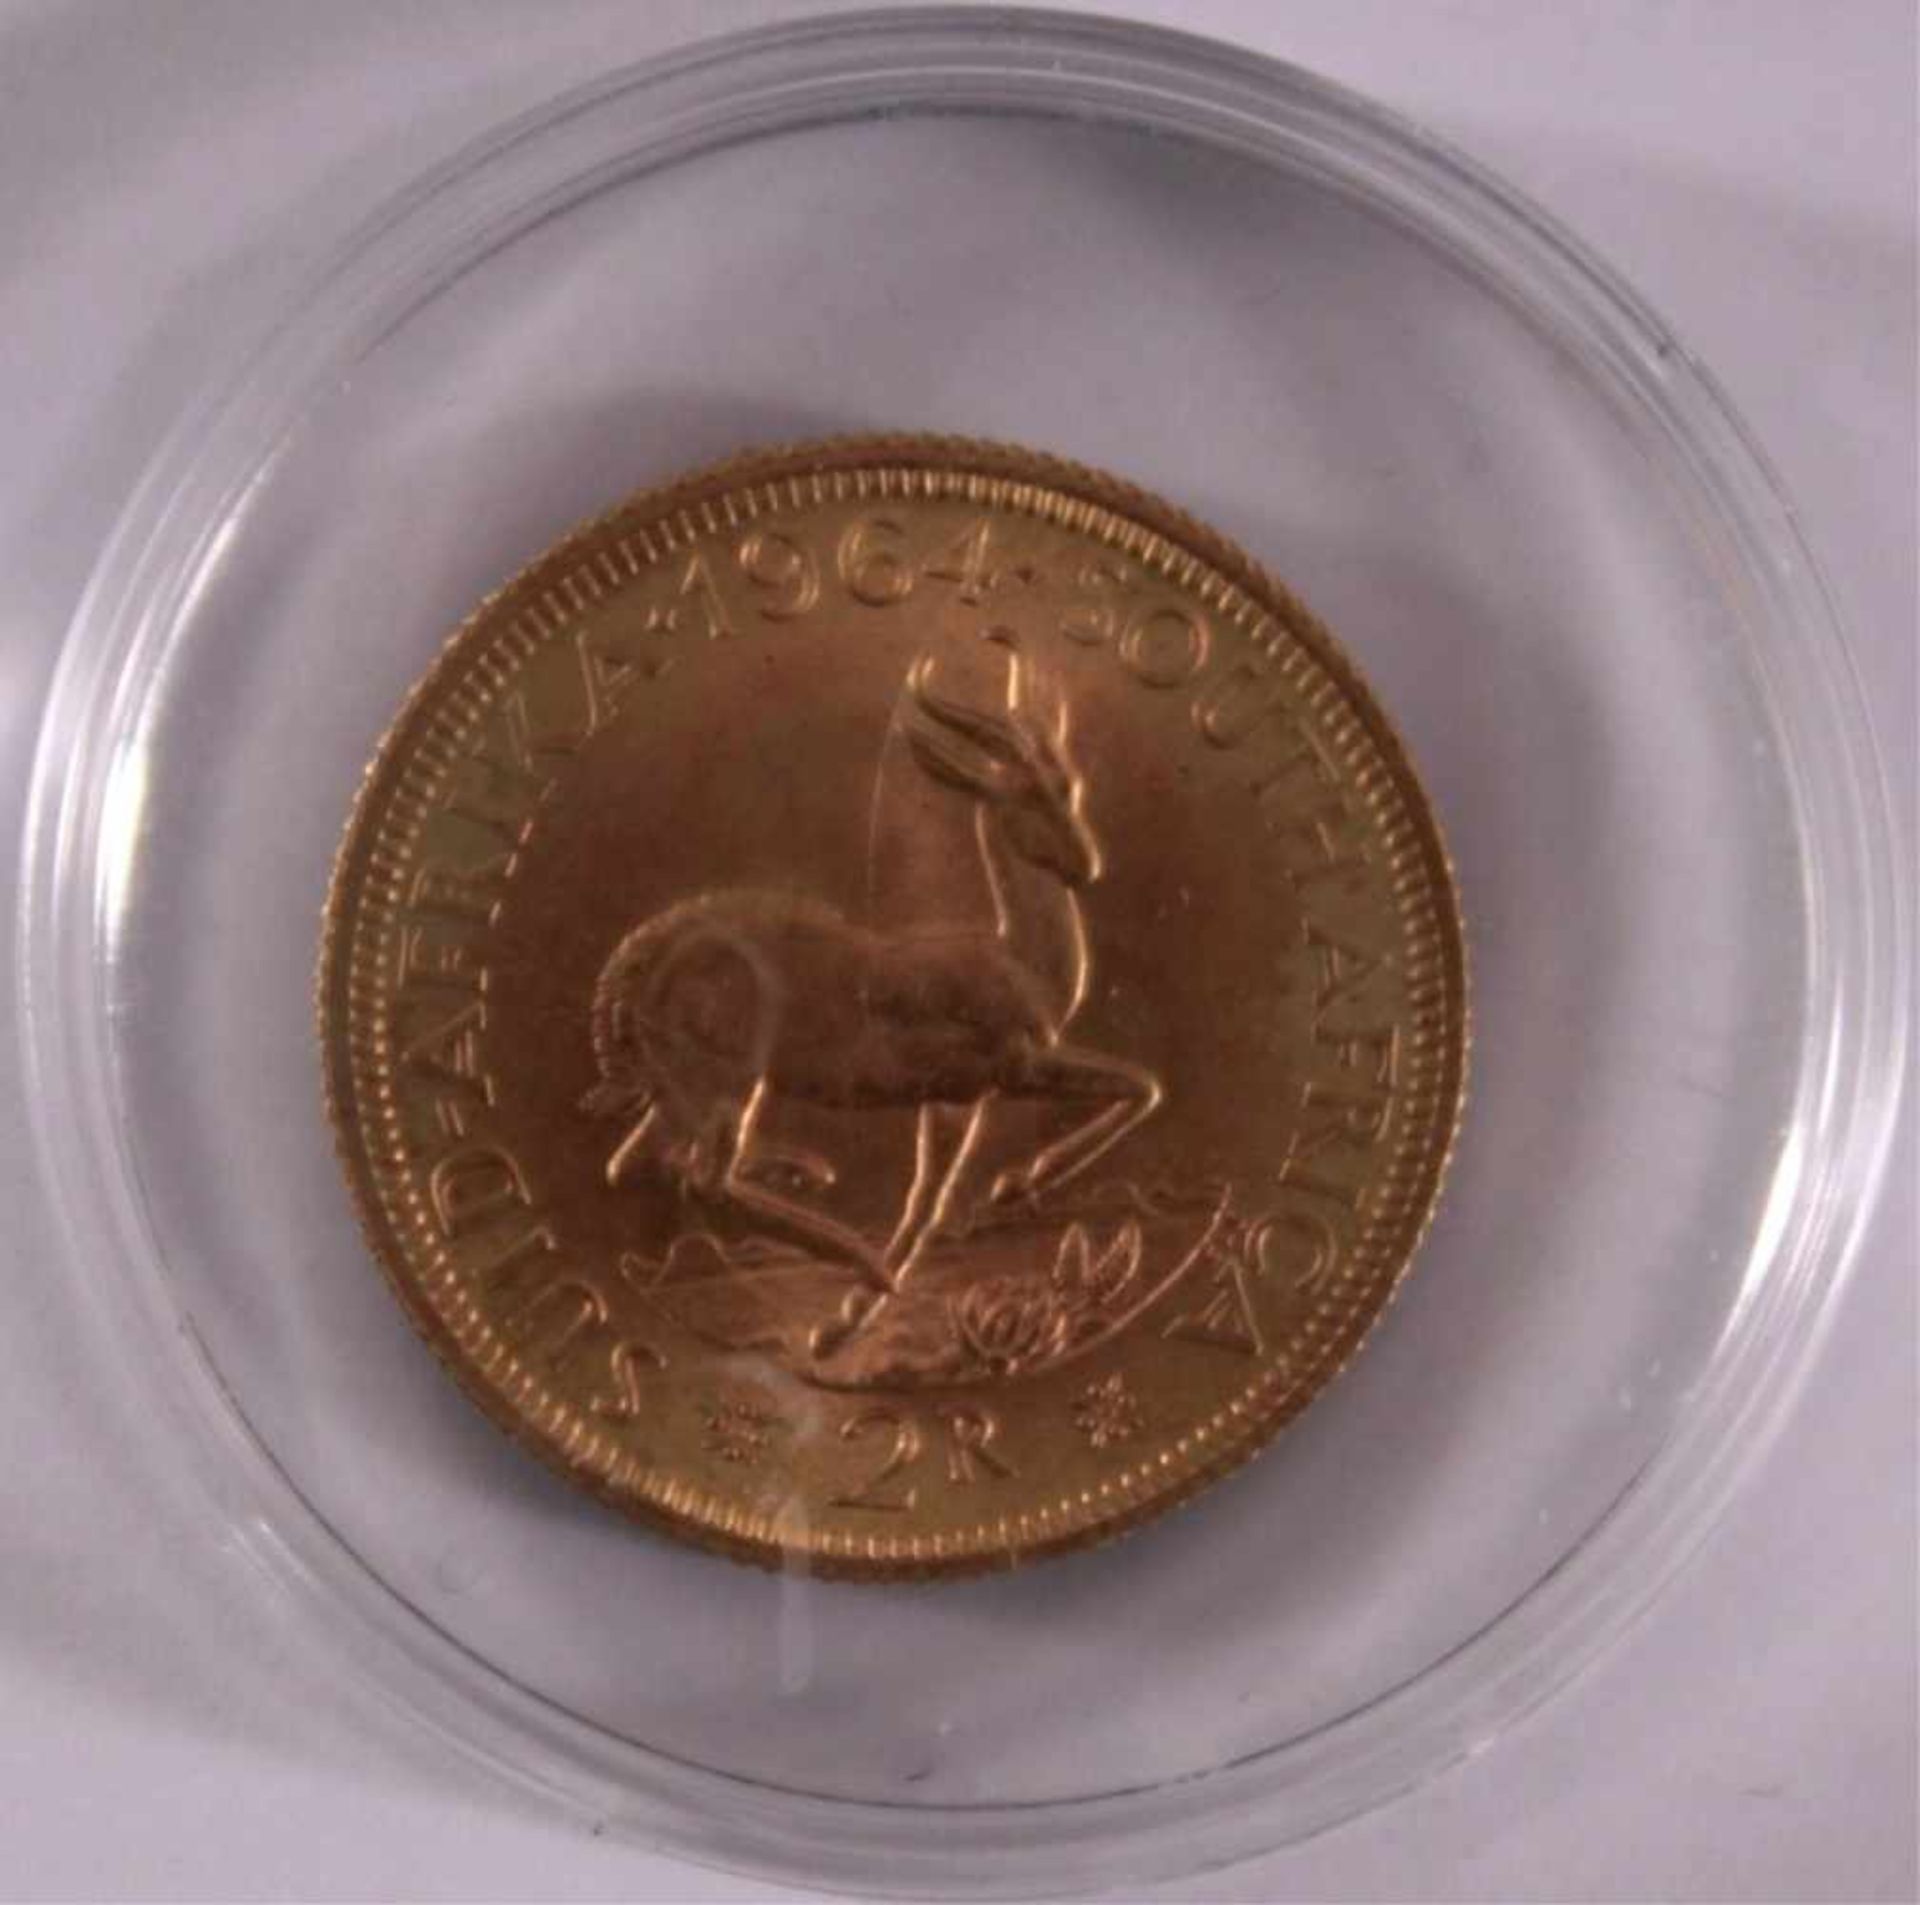 2 Rand Goldmünze 1964Gewicht ca. 7,9, 916/1000 Gelbgold - Bild 2 aus 2